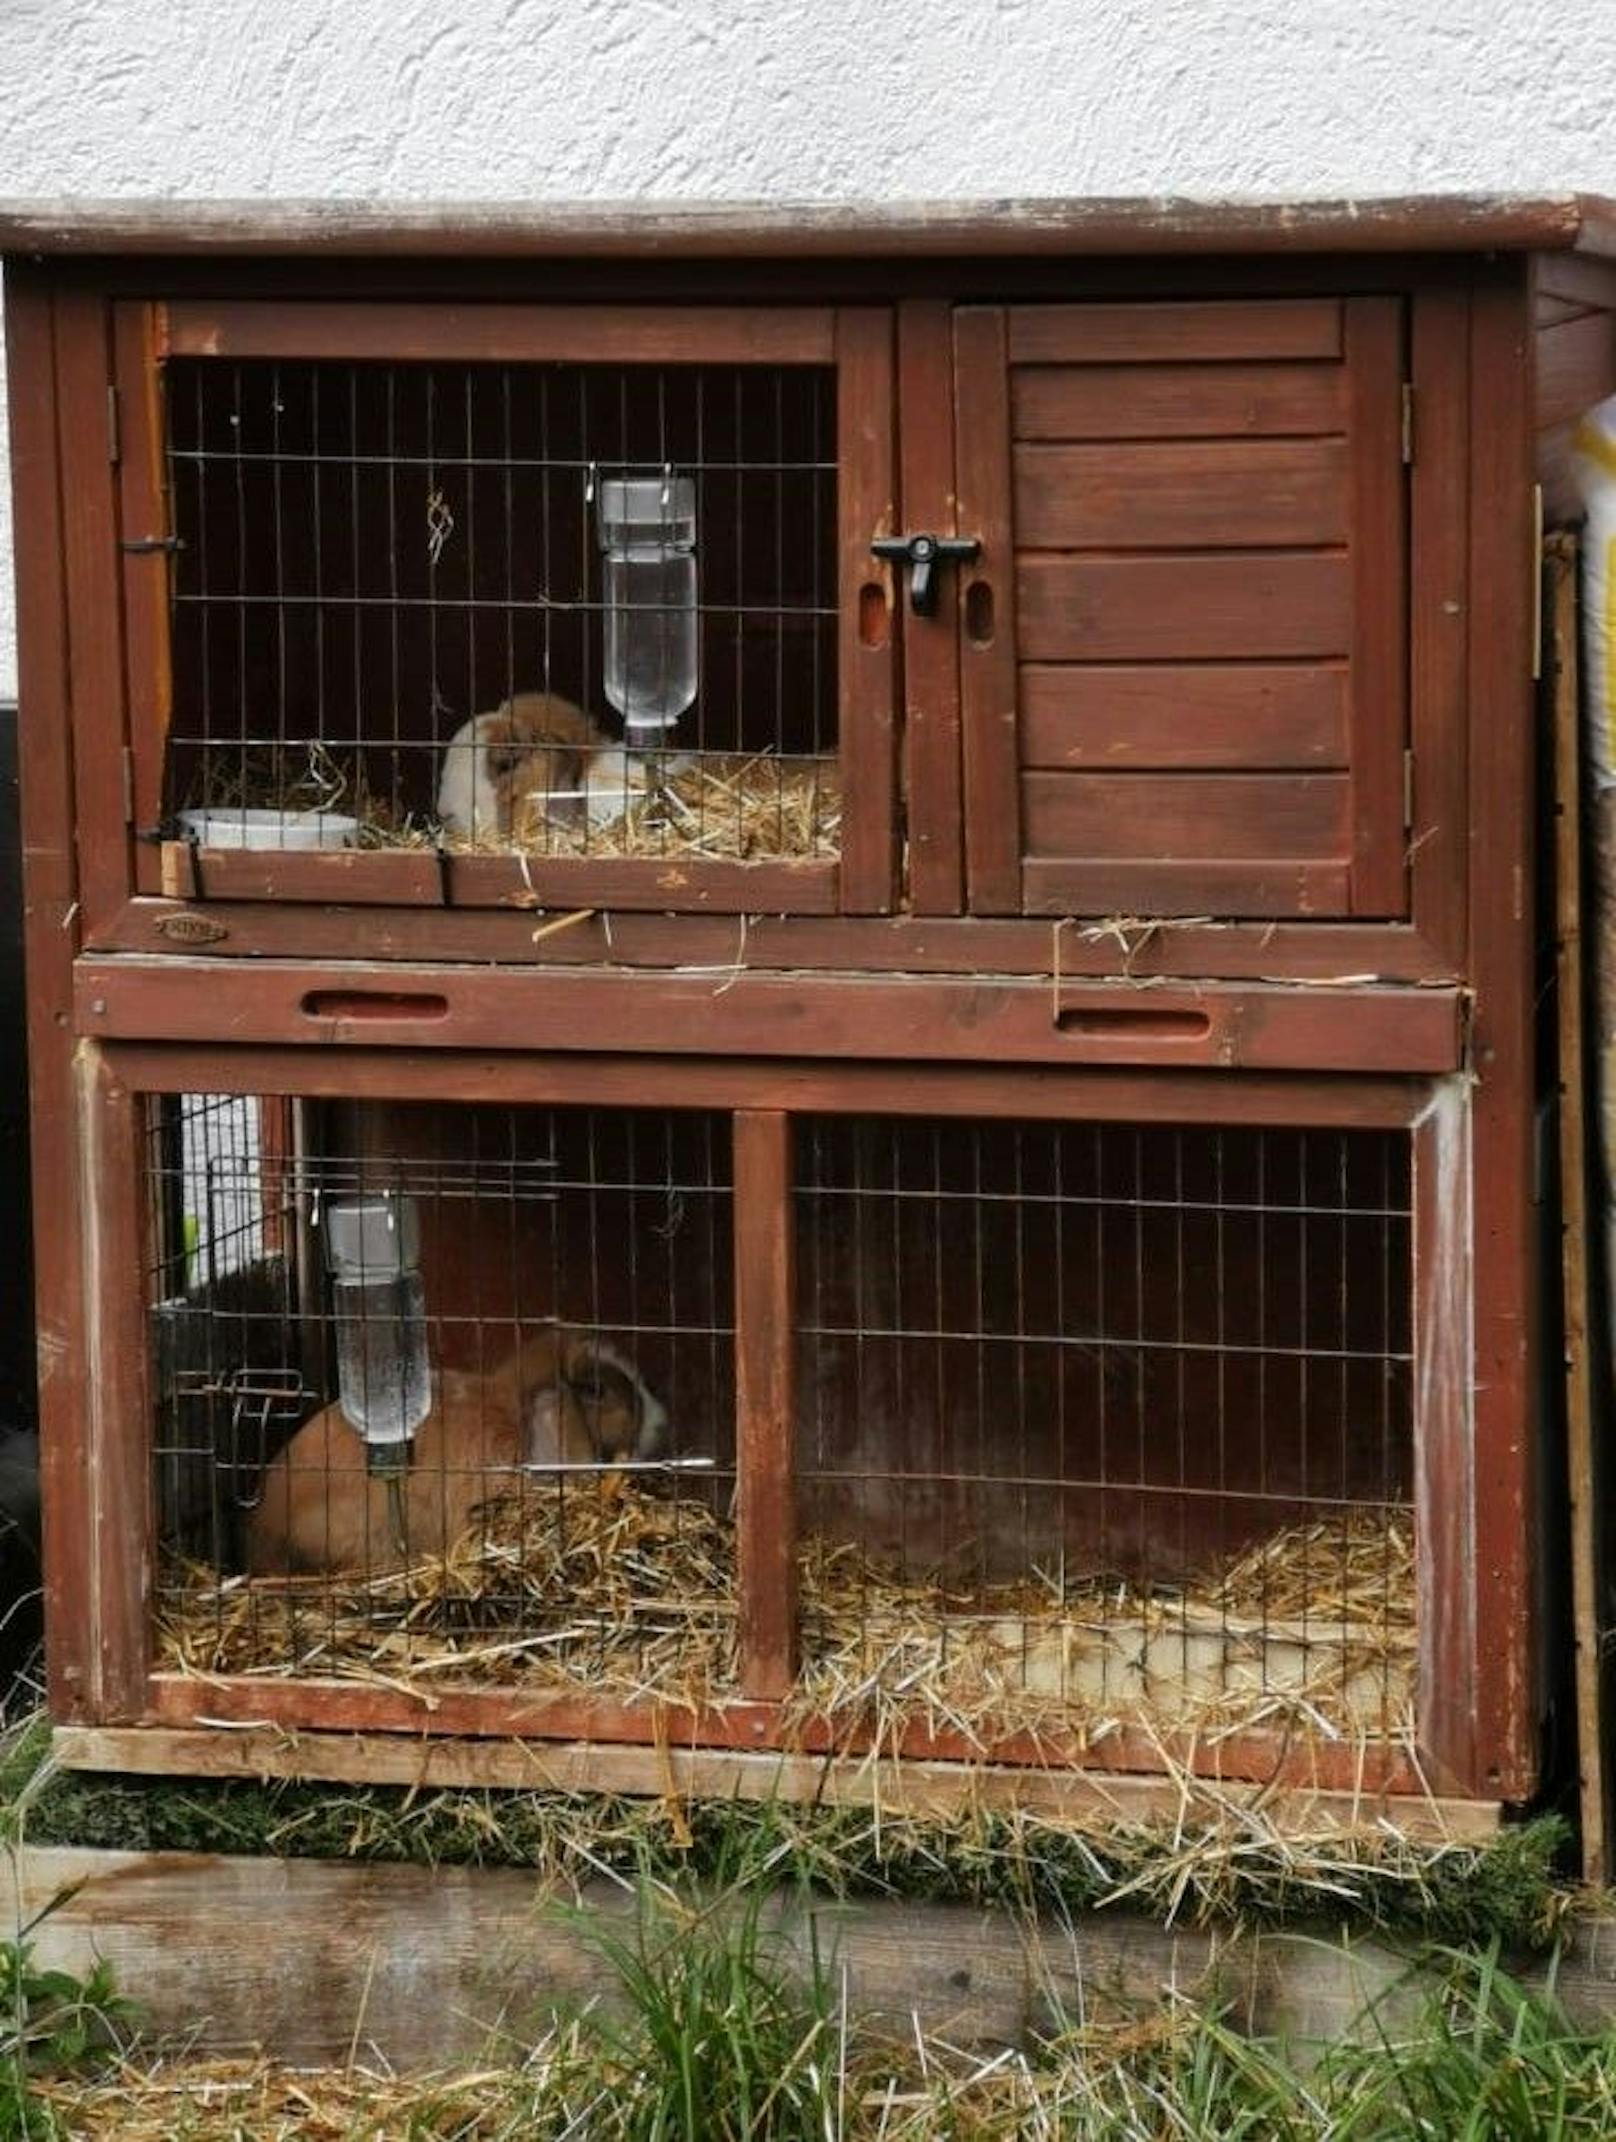 Mit diesem Bild wurde bestätigt, dass es sich um die gleichen Kaninchen handelt. Ihr Leben hat sich bei der Pfotenhilfe auf jeden Fall zum Besten gewendet. 